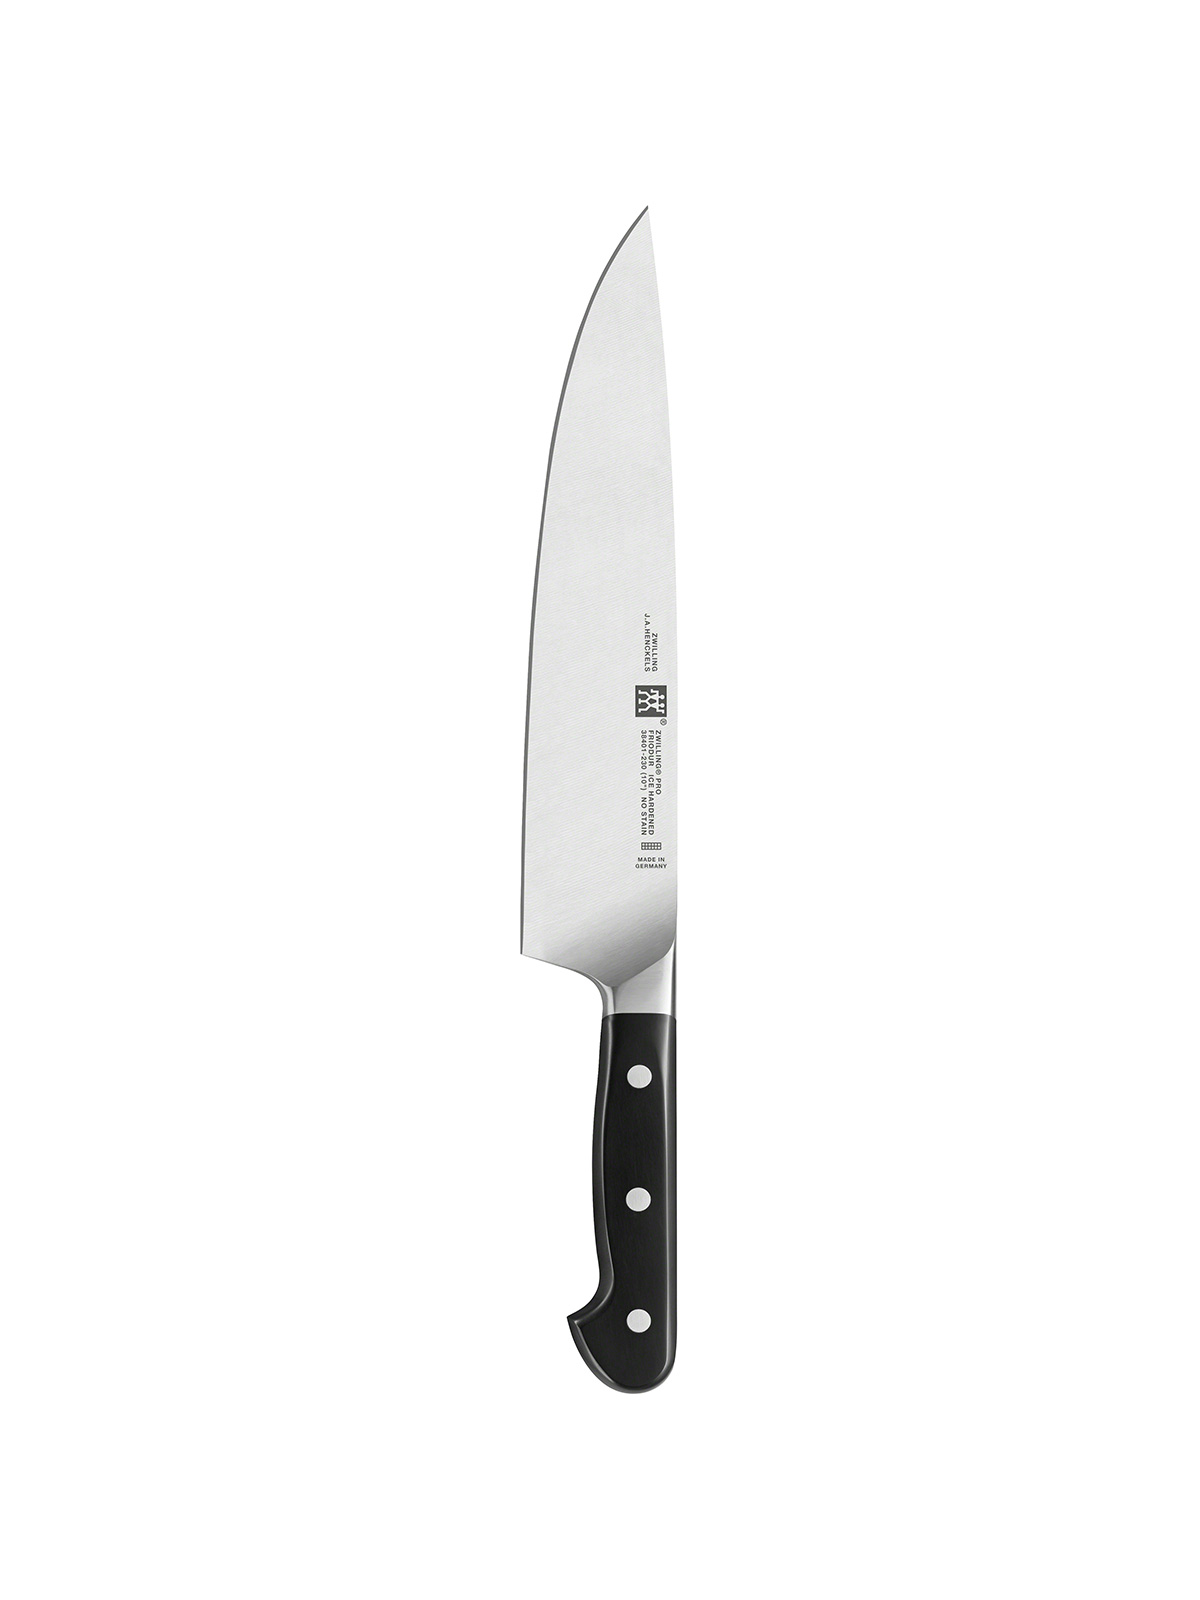 Zwilling Chef's knife kuharsko nož 23 cm